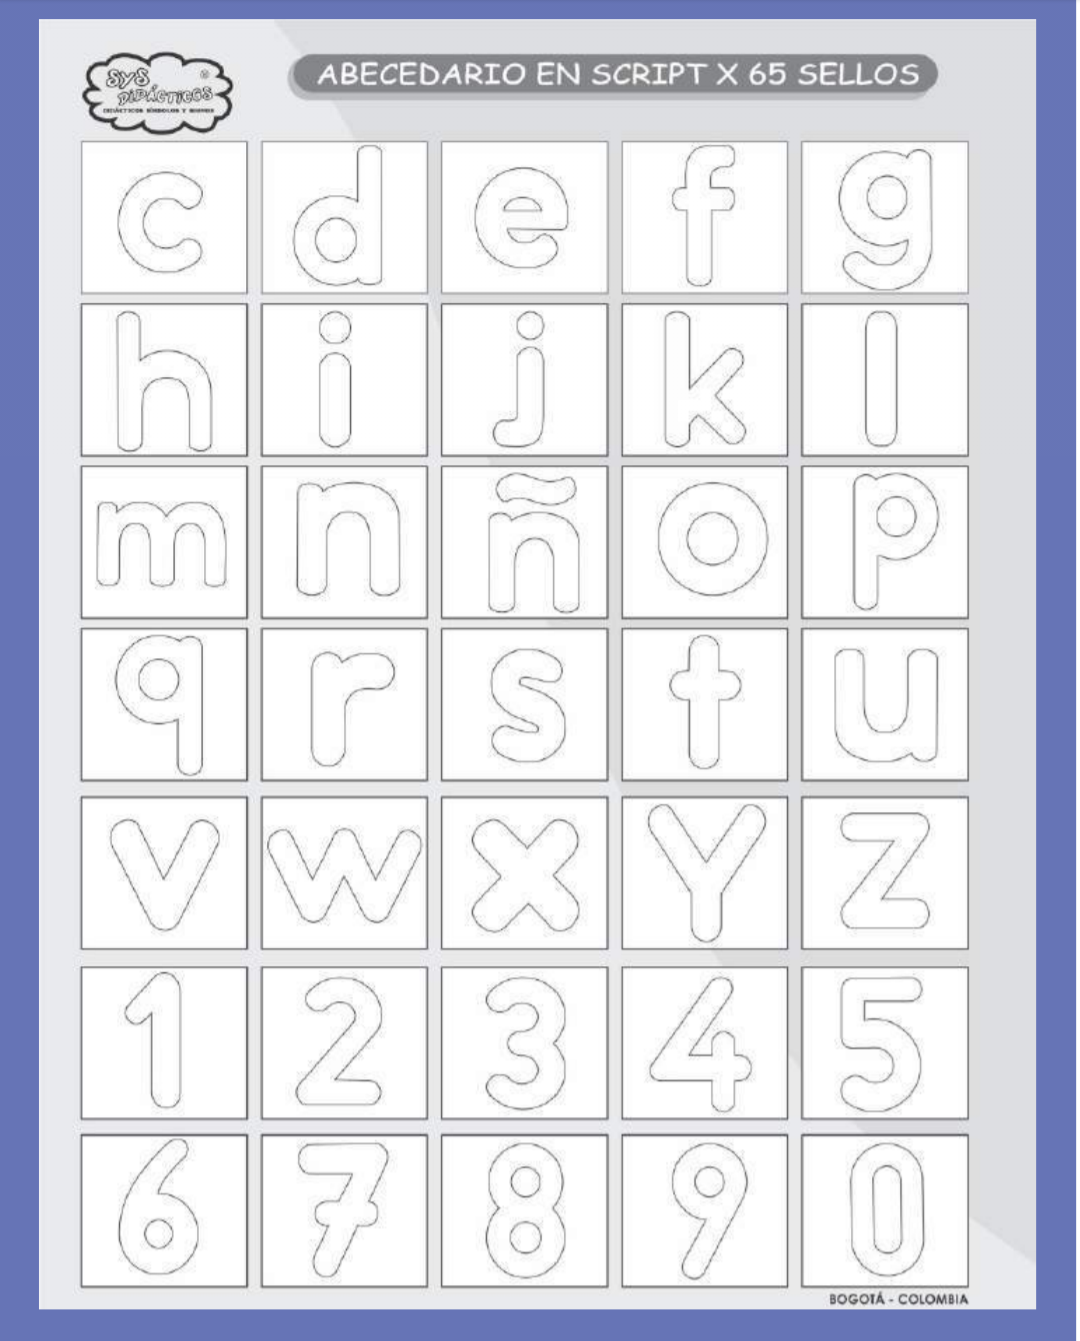 Sellos abecedario con letras y números